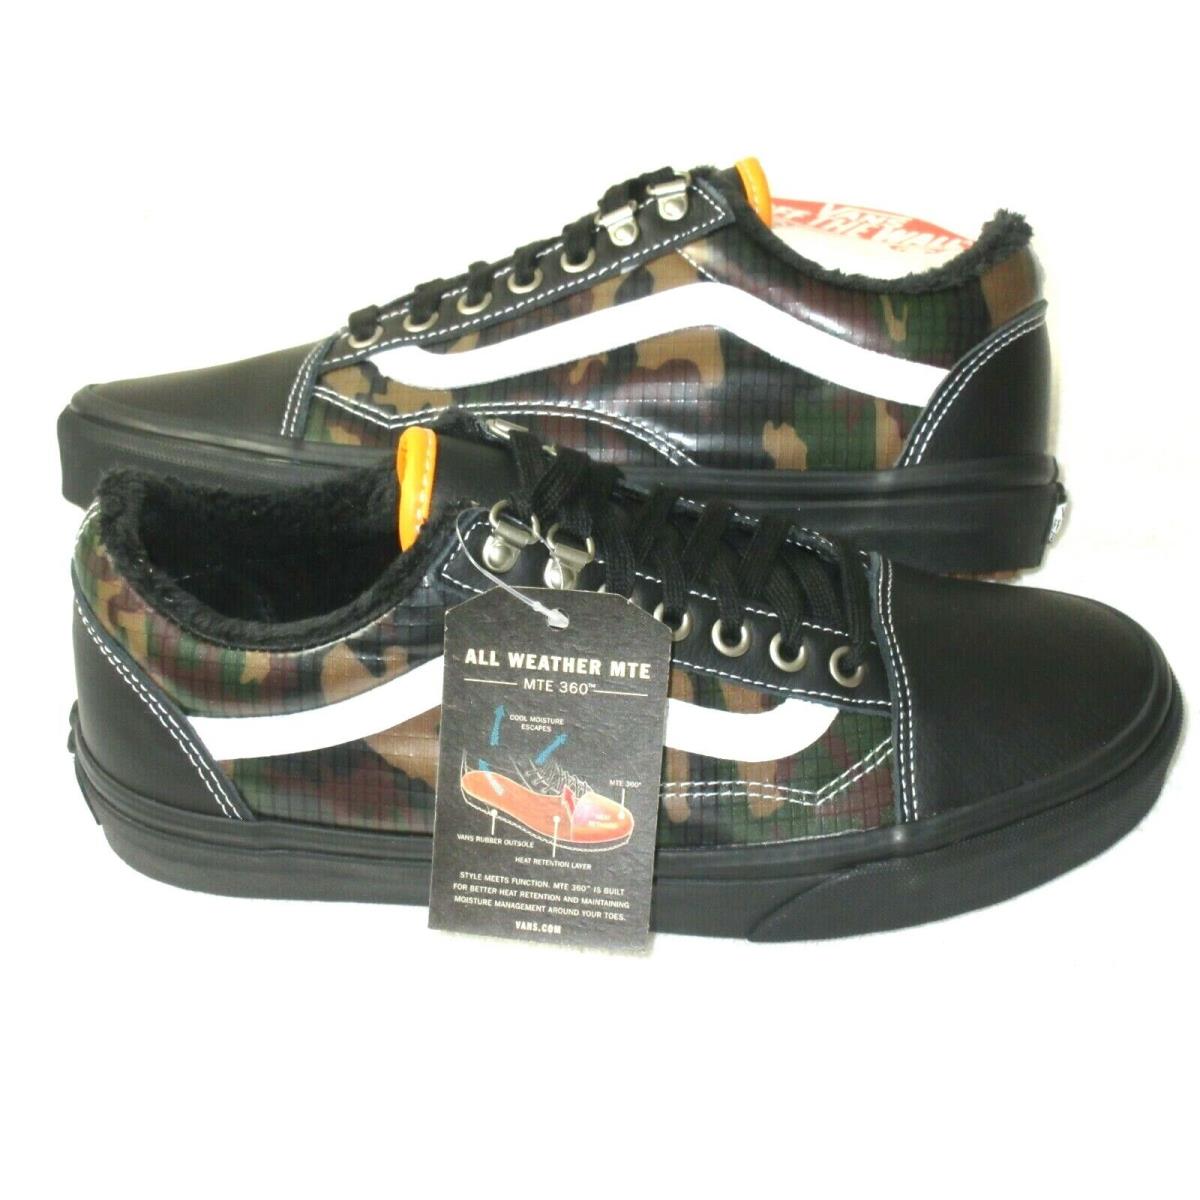 Vans Mens Old Skool Mte All Weather Skate Shoes Black Camouflage Size 8